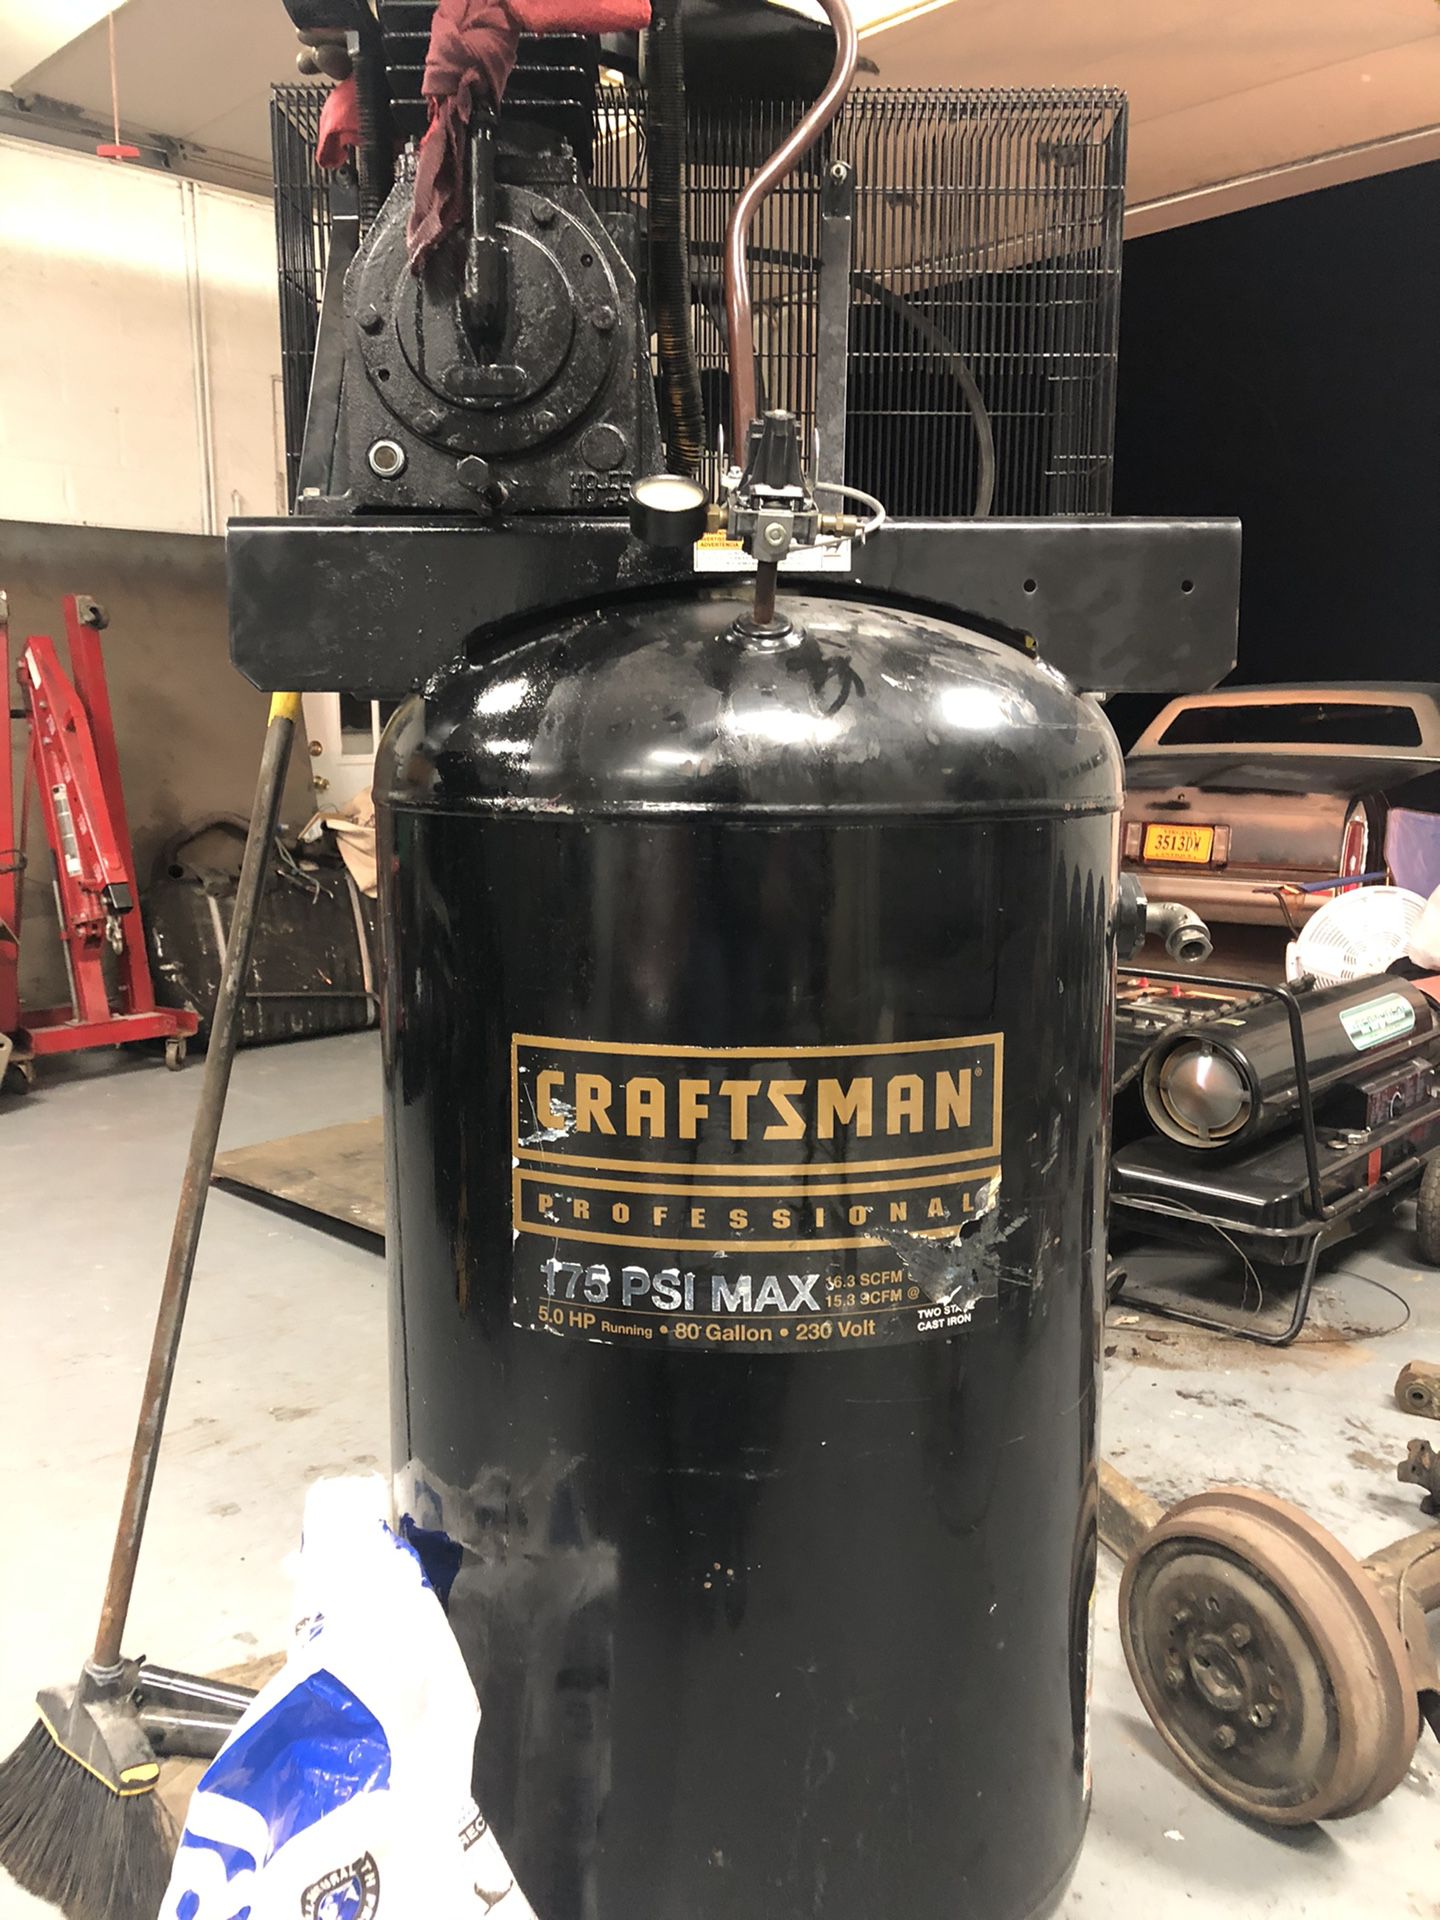 Craftsman air compressor 80 gallon for parts or fixer upper